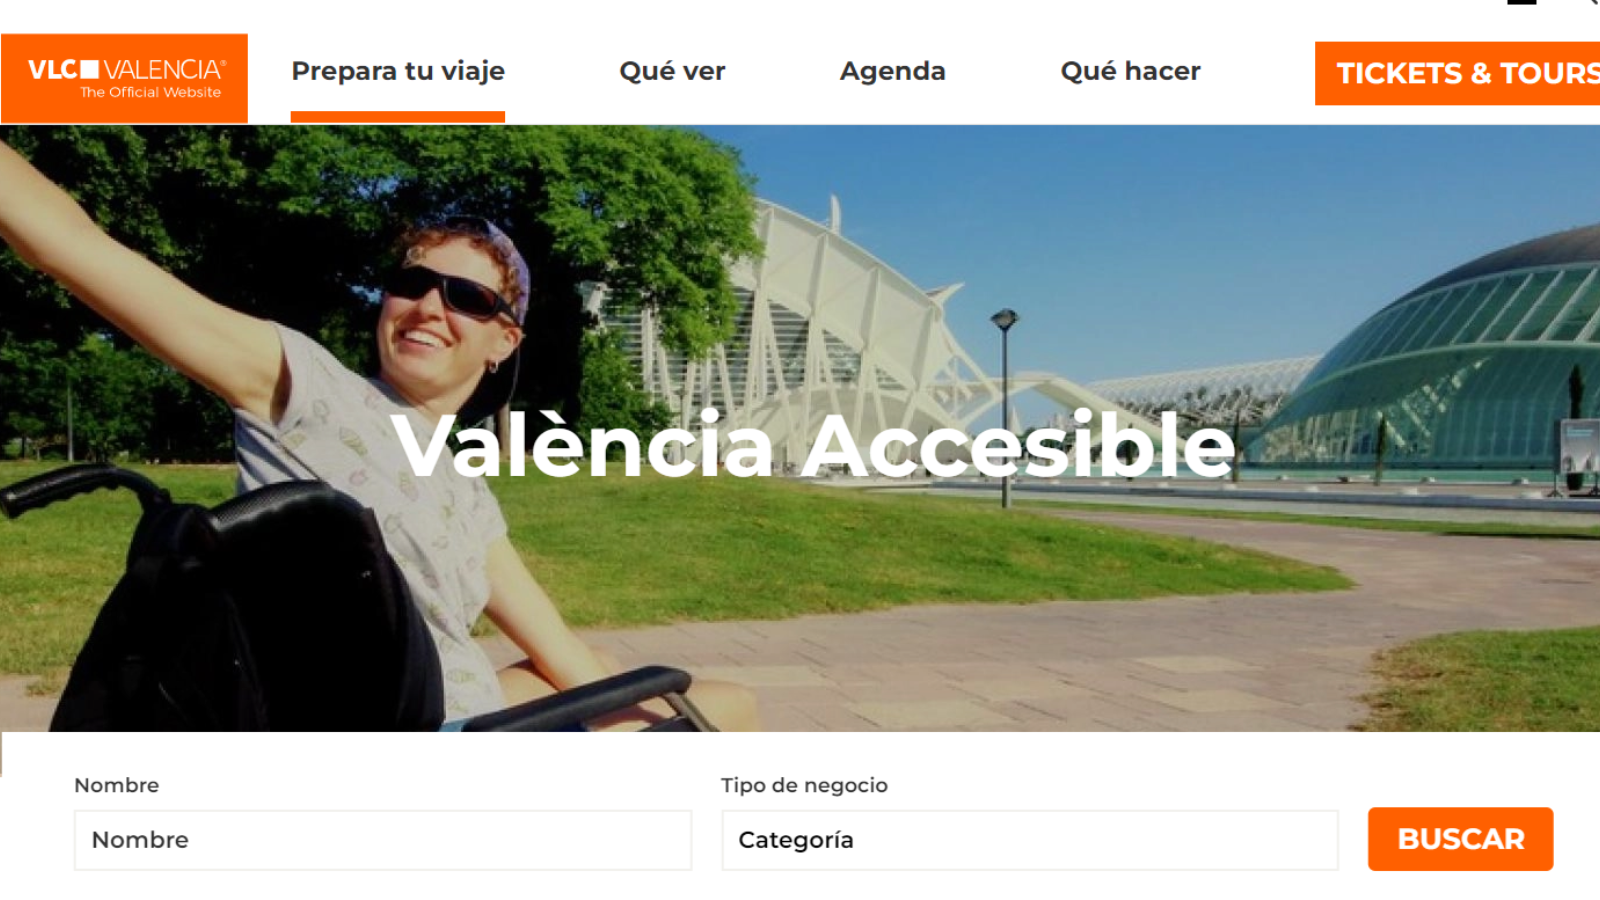 Imagen de la web de visit Valencia donde se recoge la guía de turismo accesible de la ciudad